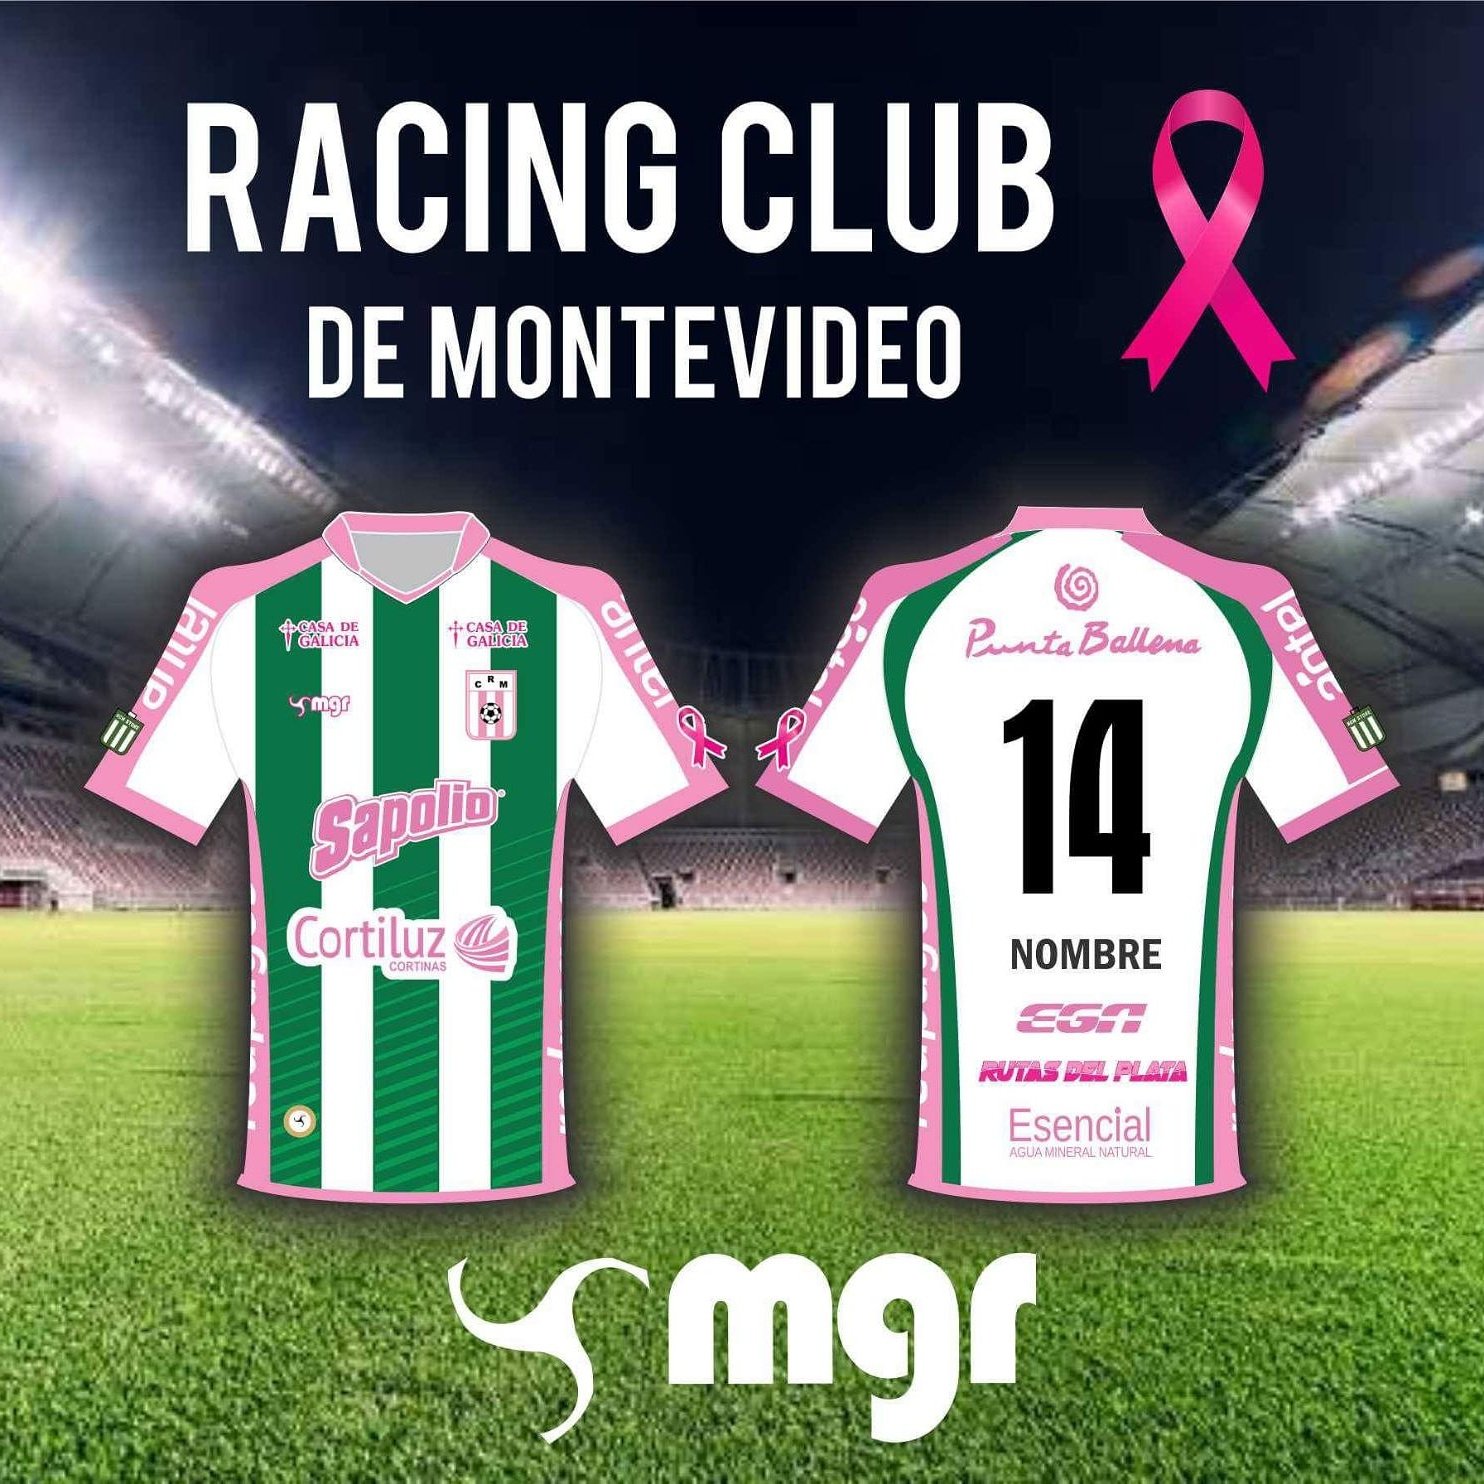 Racing Club de Mvdeo. (@RacingClubUru) / X